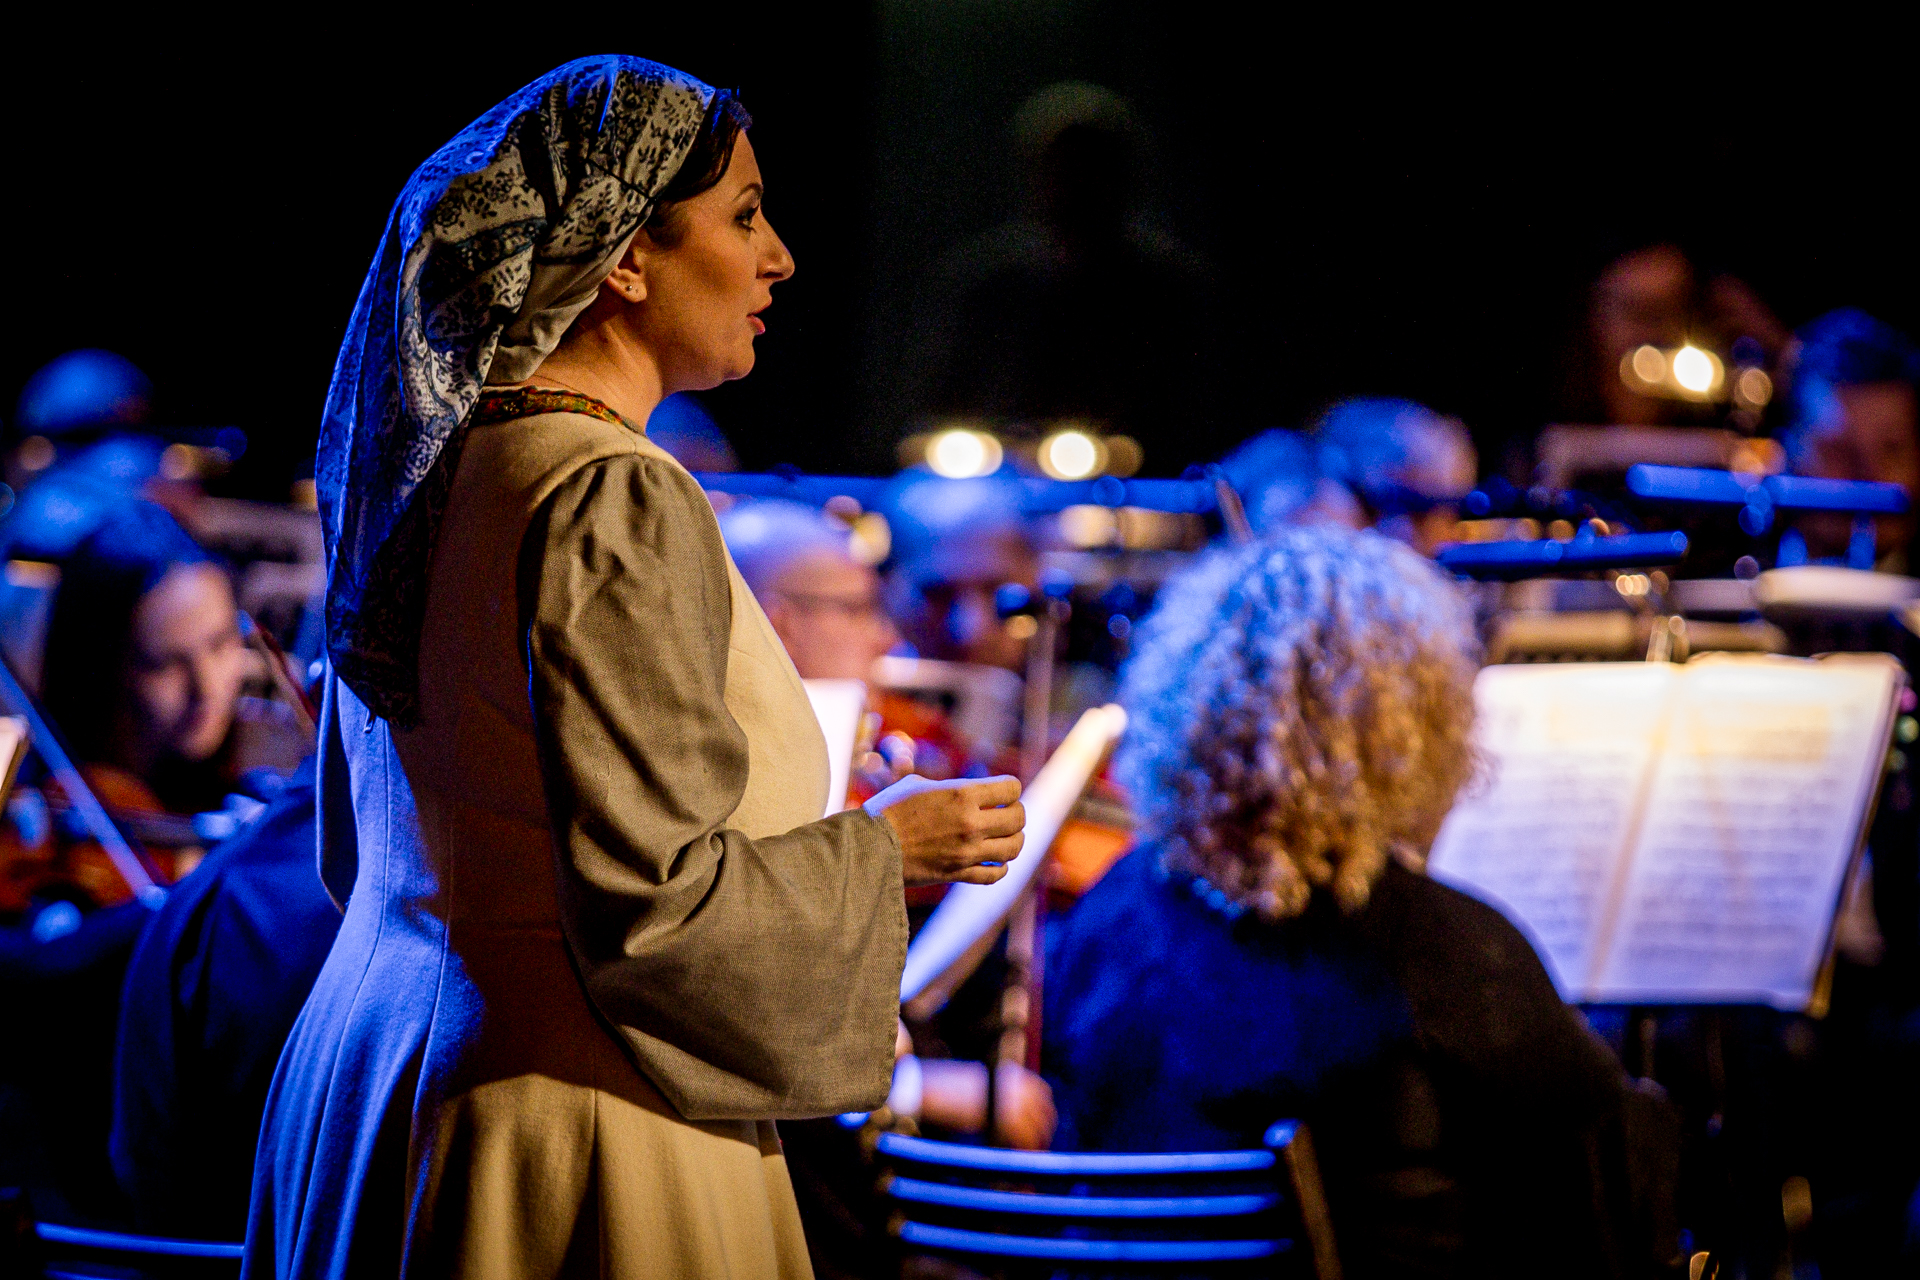 Zdjęcie. Kobieta w długiej beżowej sukni z chustką w drobny deseń na głowie śpiewa. To solistka opery "Straszny dwór"..